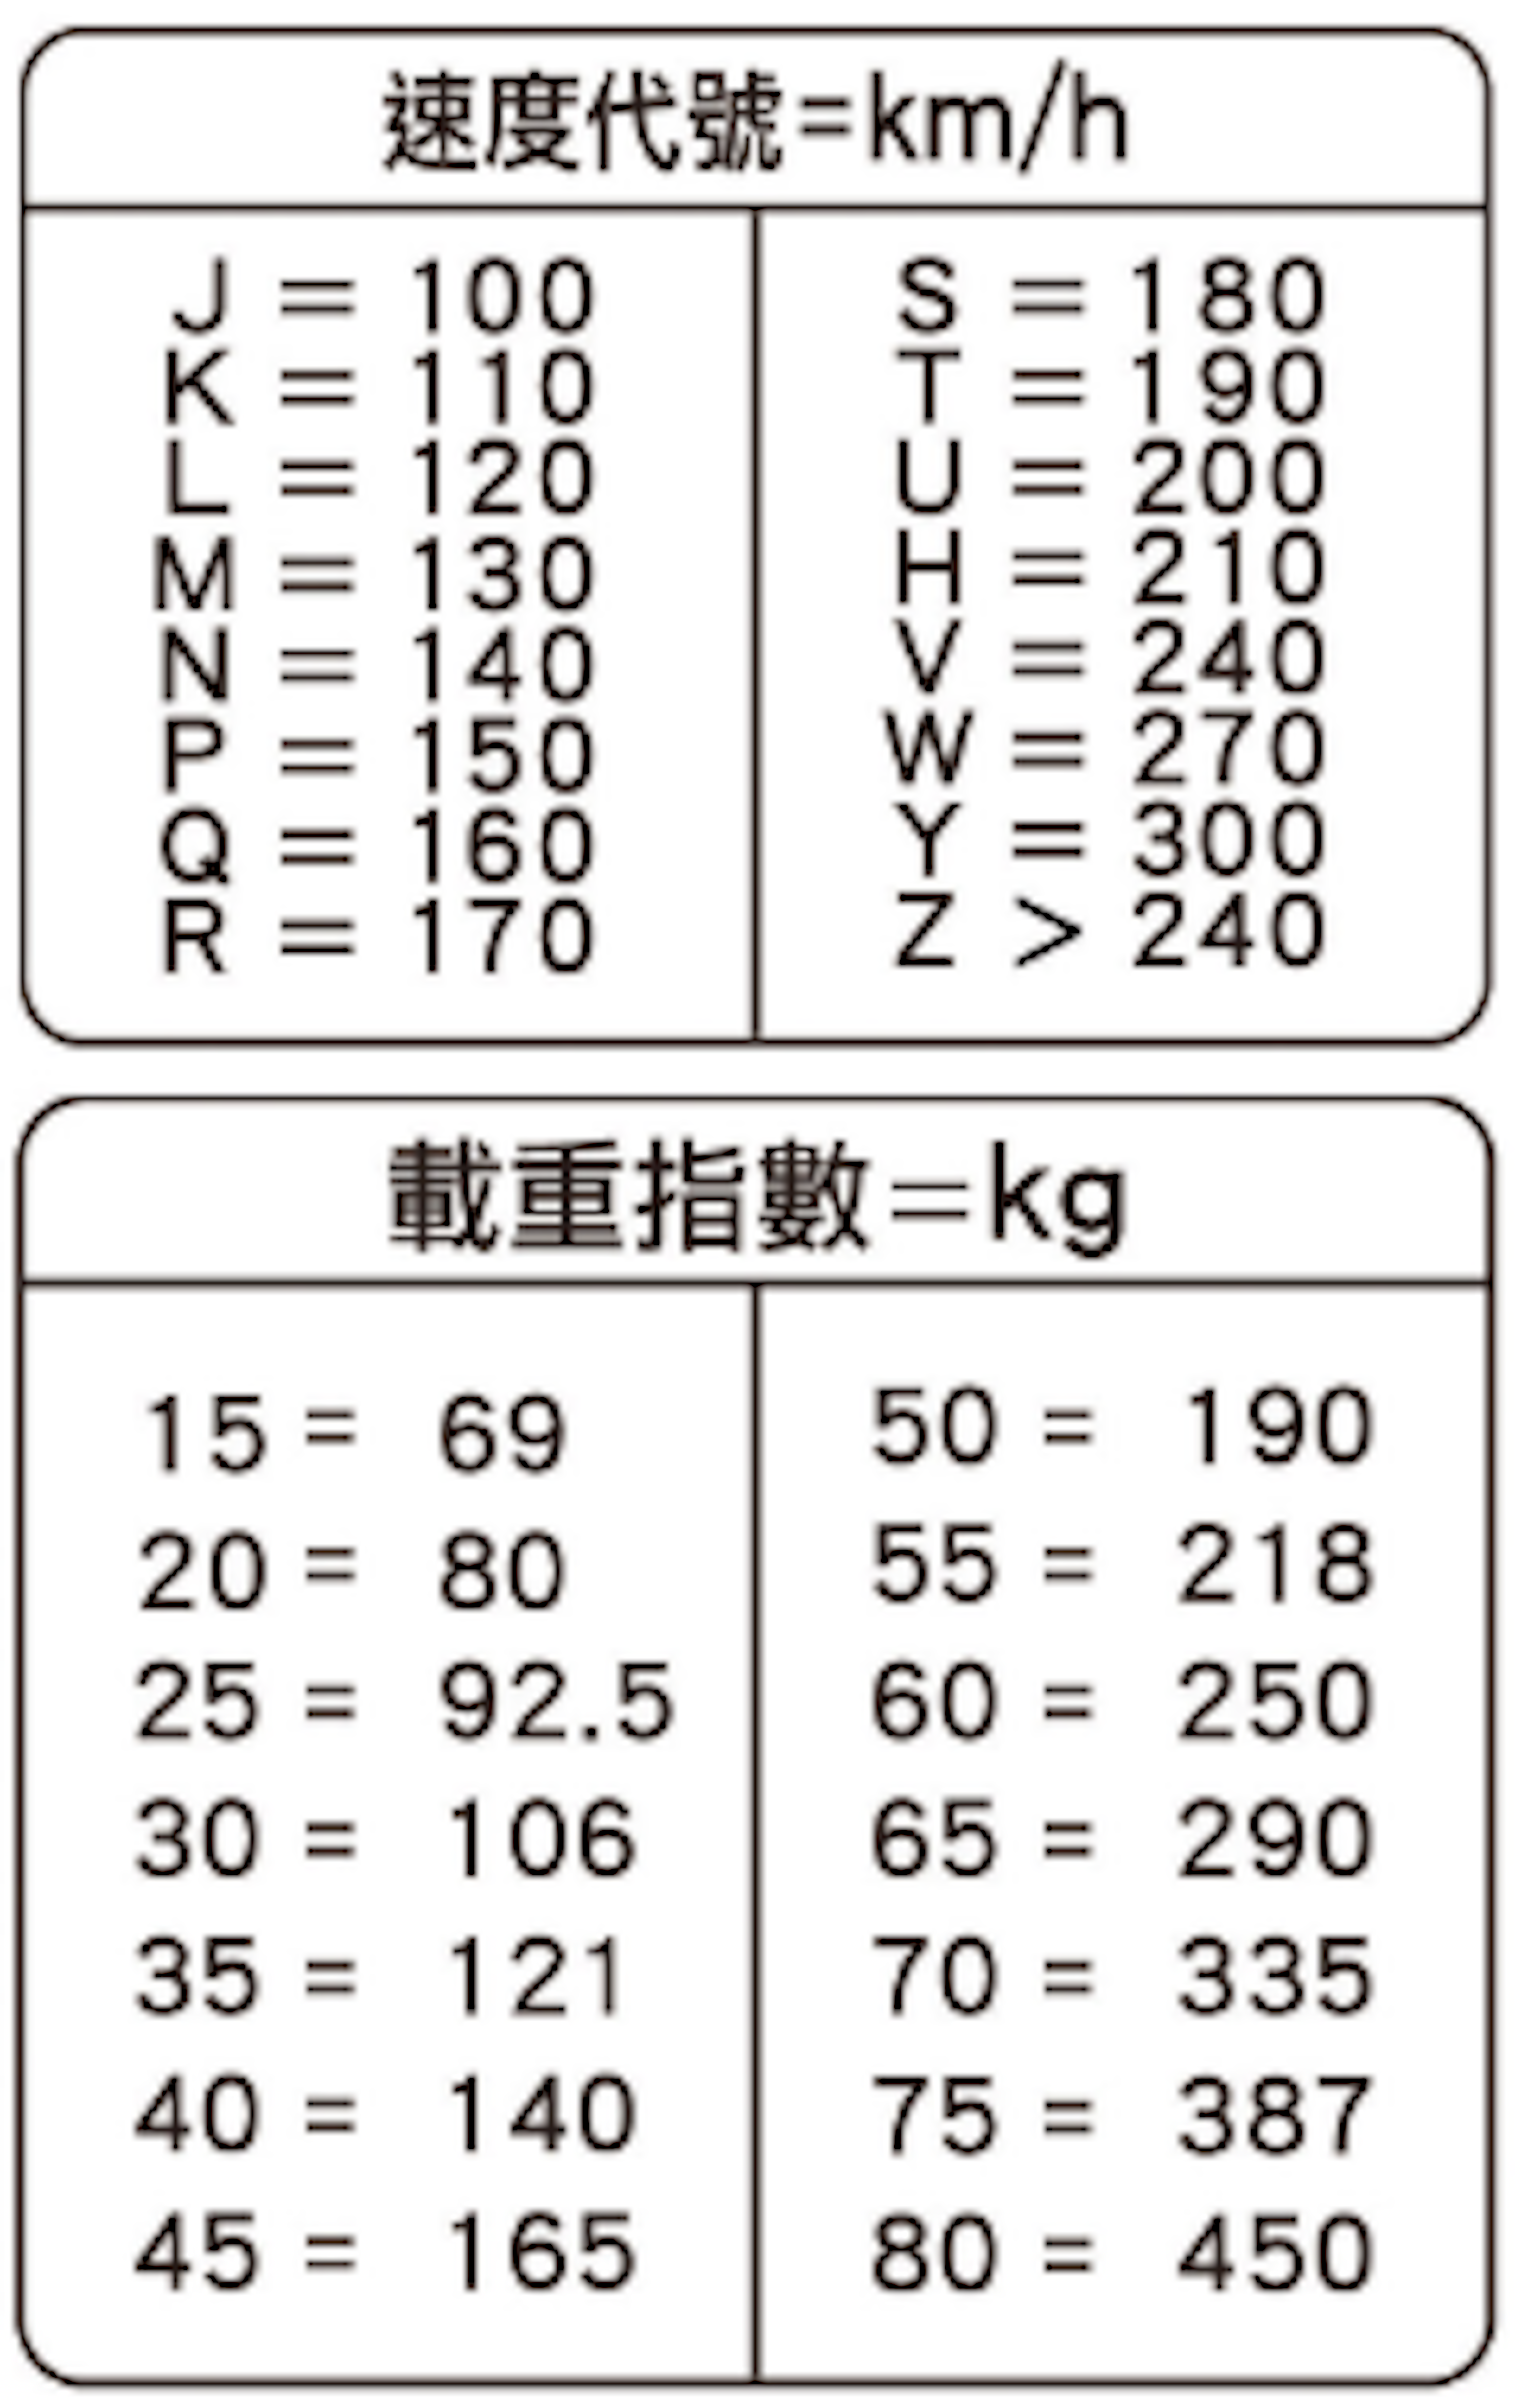 照片中提到了速度代號=km/h、J = 100、K = 110，包含了數、線、角度、紙、字形